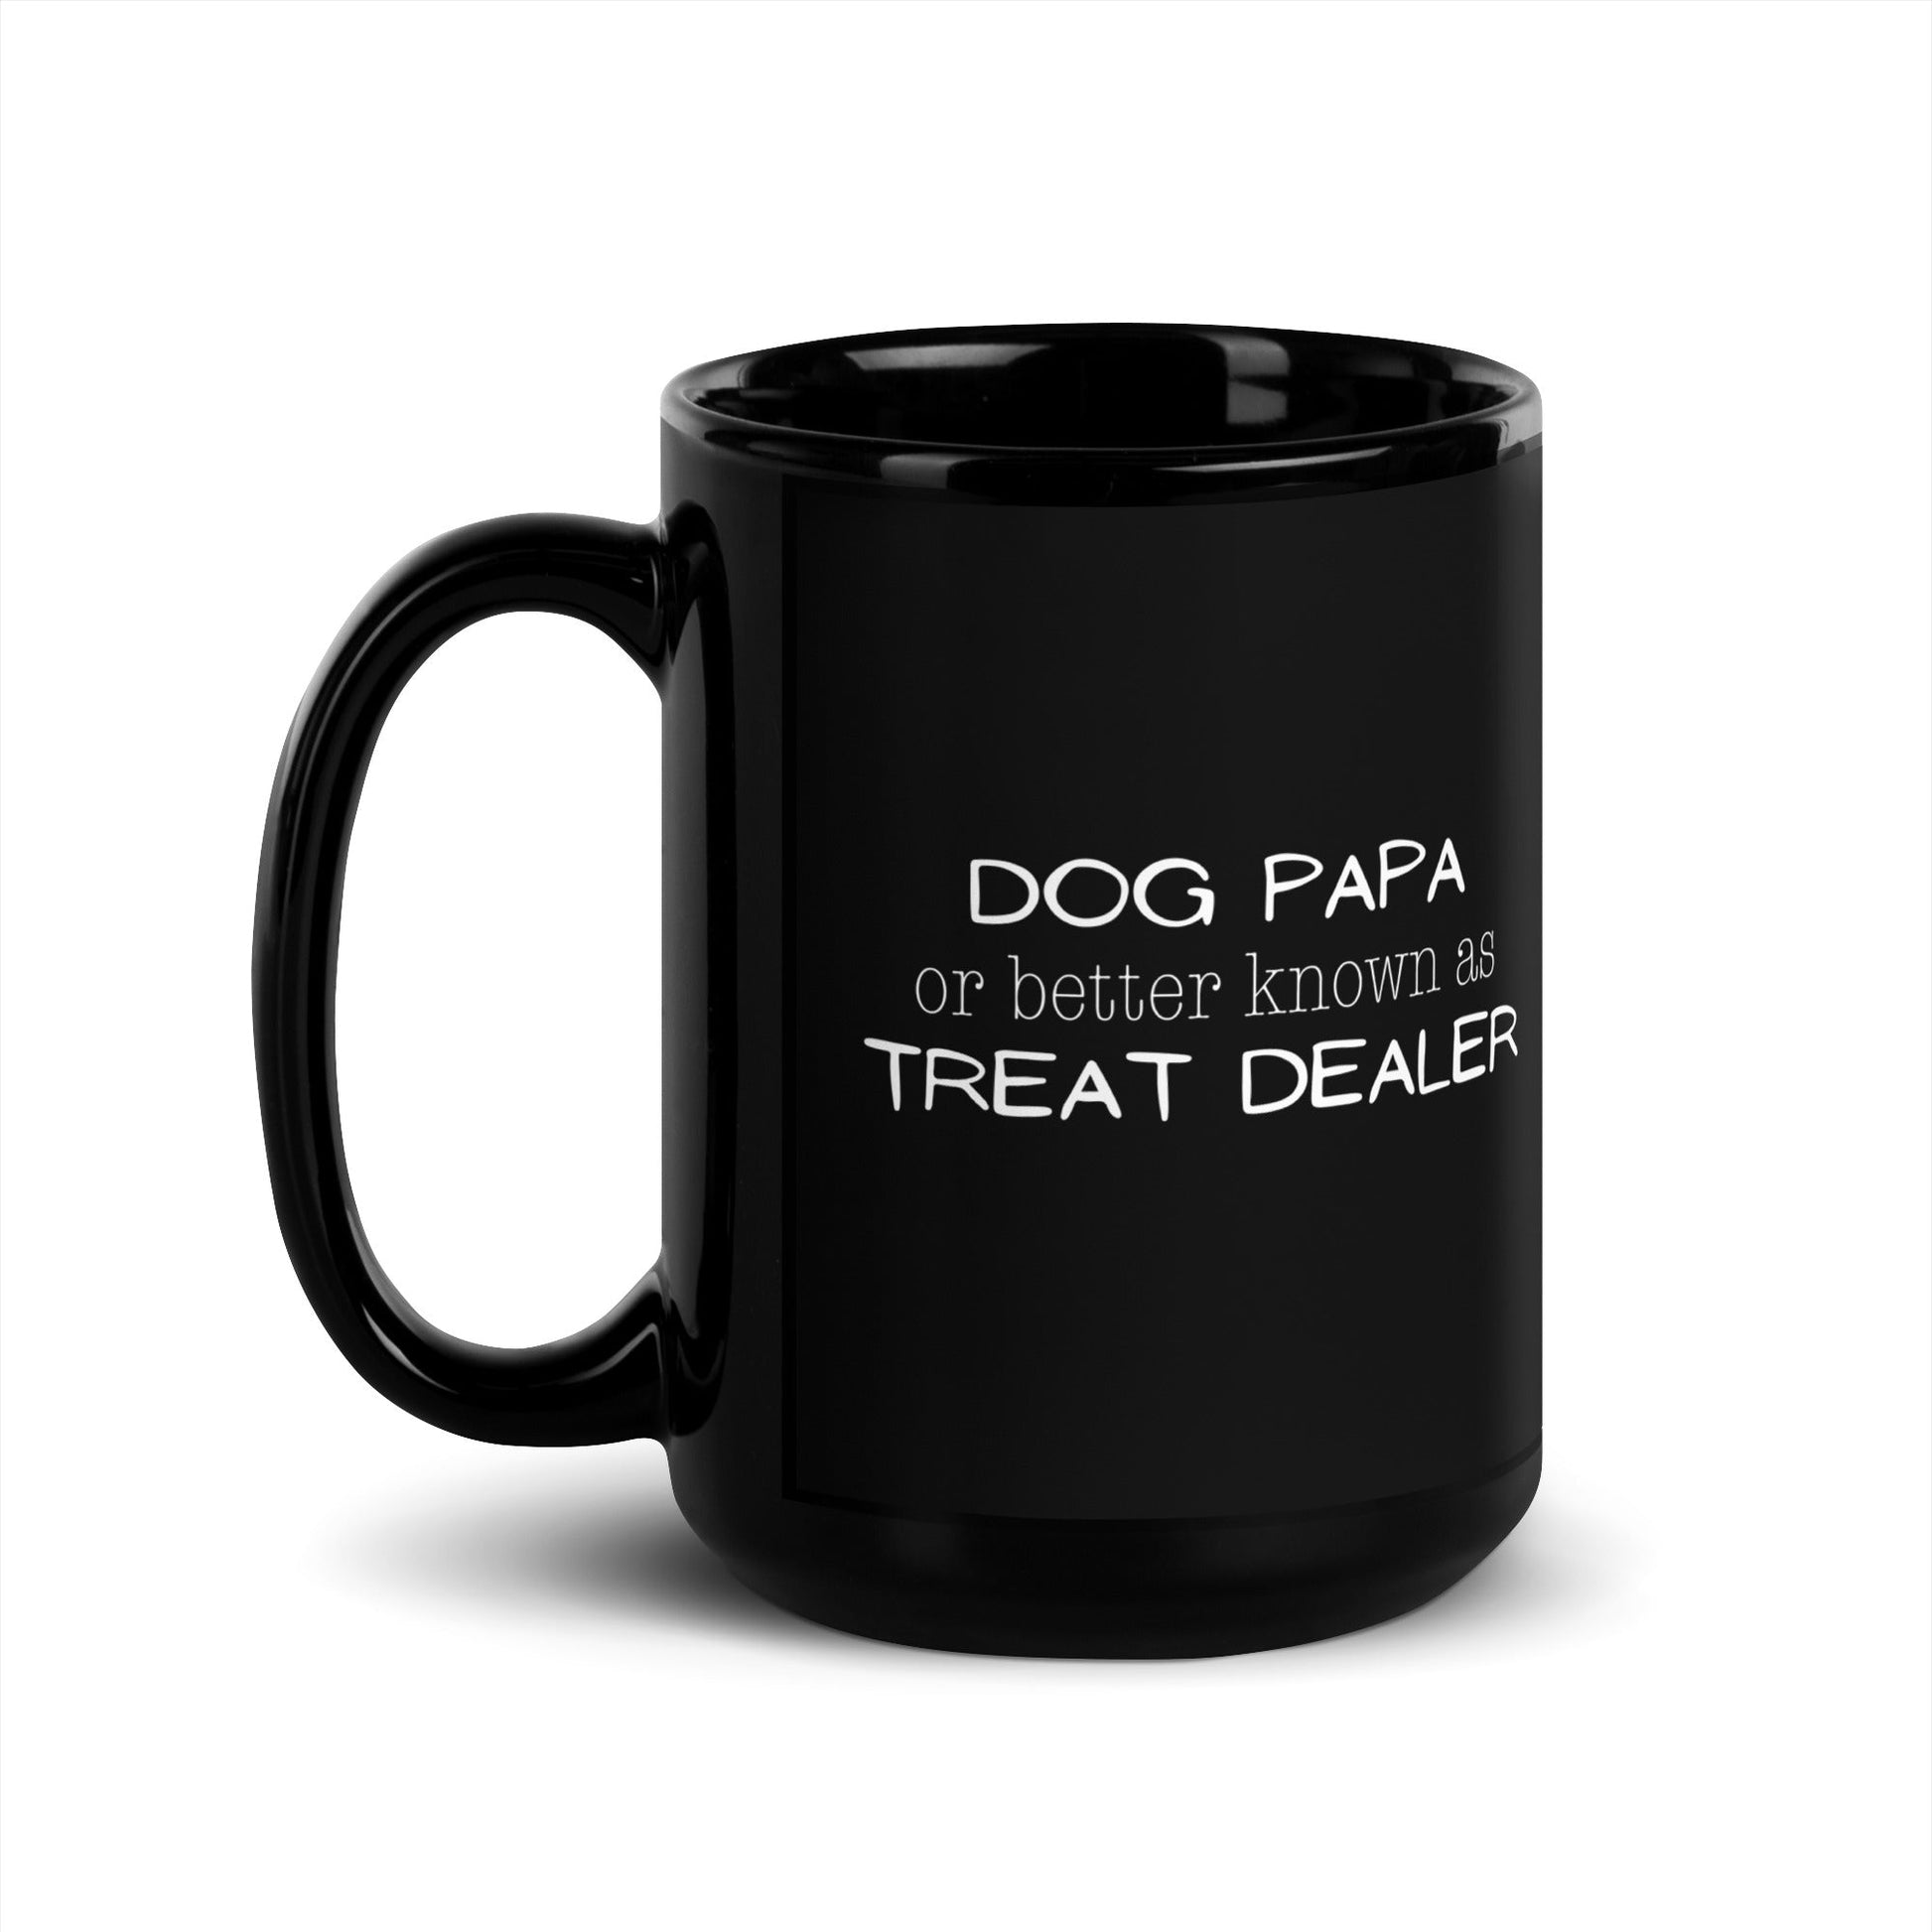 Dog Papa aka Treat Dealer Mug - 15 oz